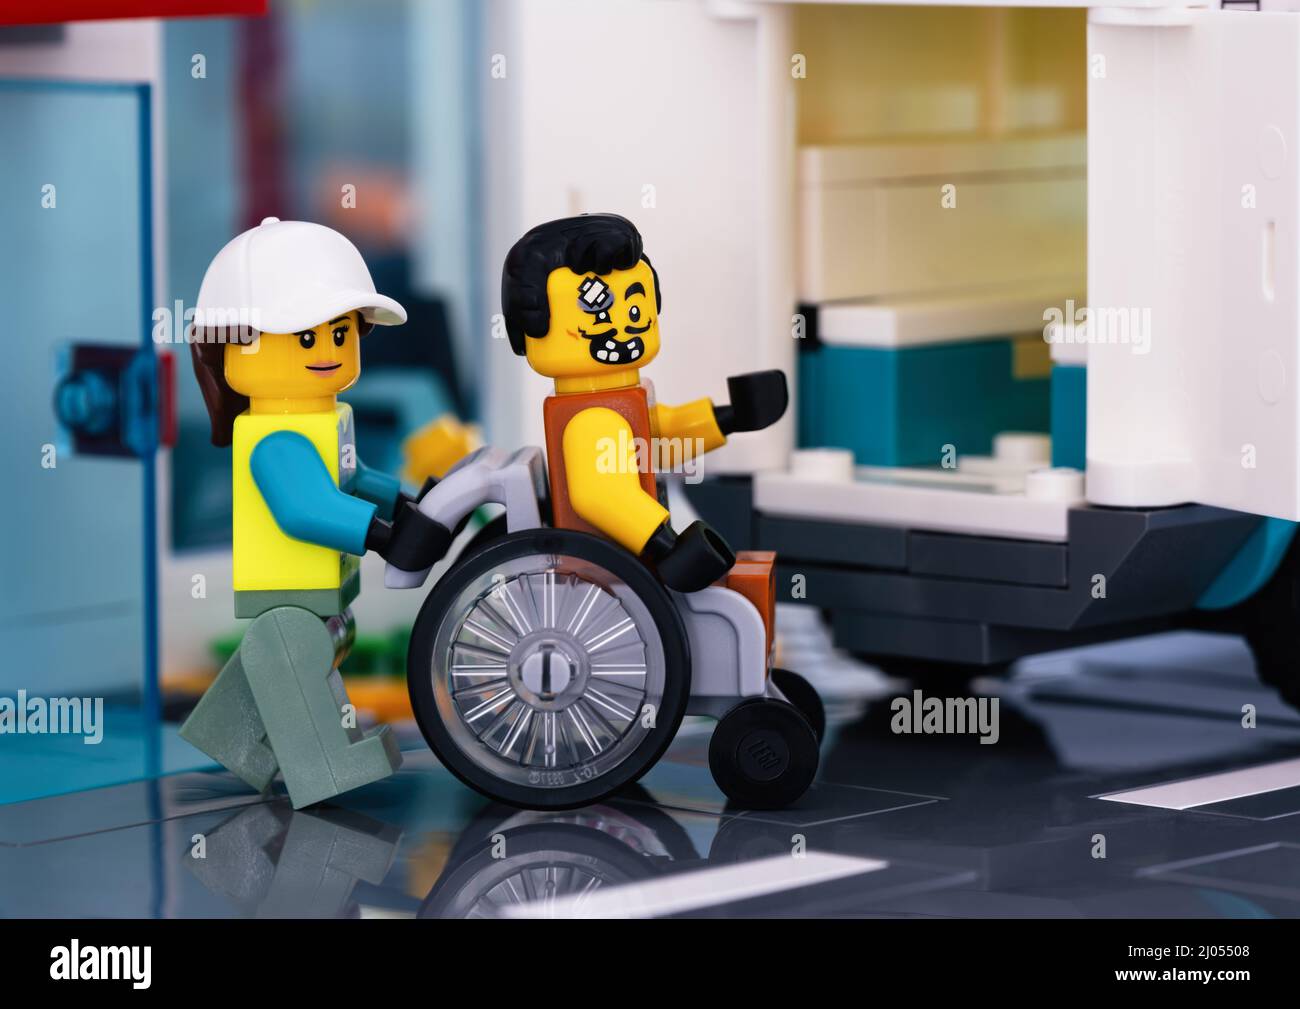 Tambov, Federazione Russa - 11 febbraio 2022 una minipfigura paramedica Lego  che spinge una sedia a rotelle con un paziente Lego seduto in un'ambulanza  Foto stock - Alamy